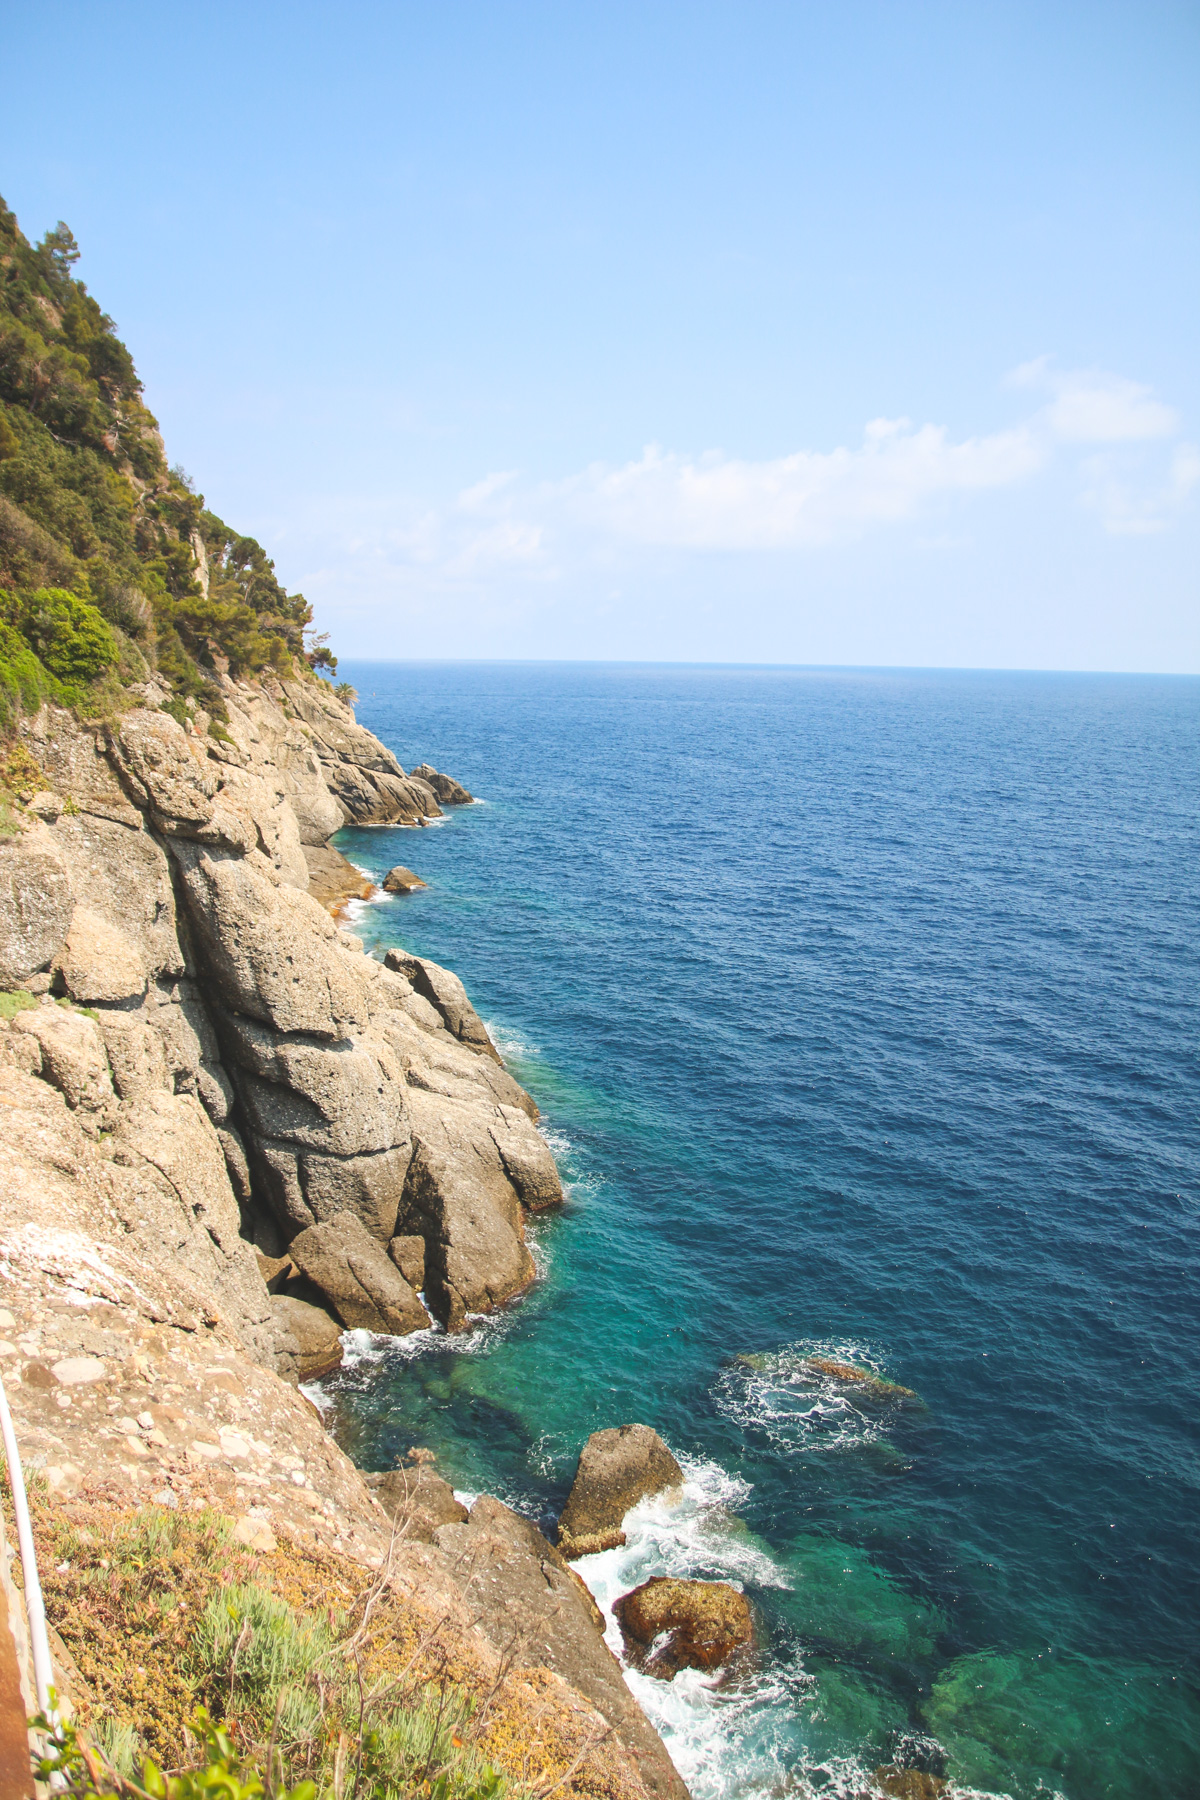 Views in Portofino, Liguria, Italy